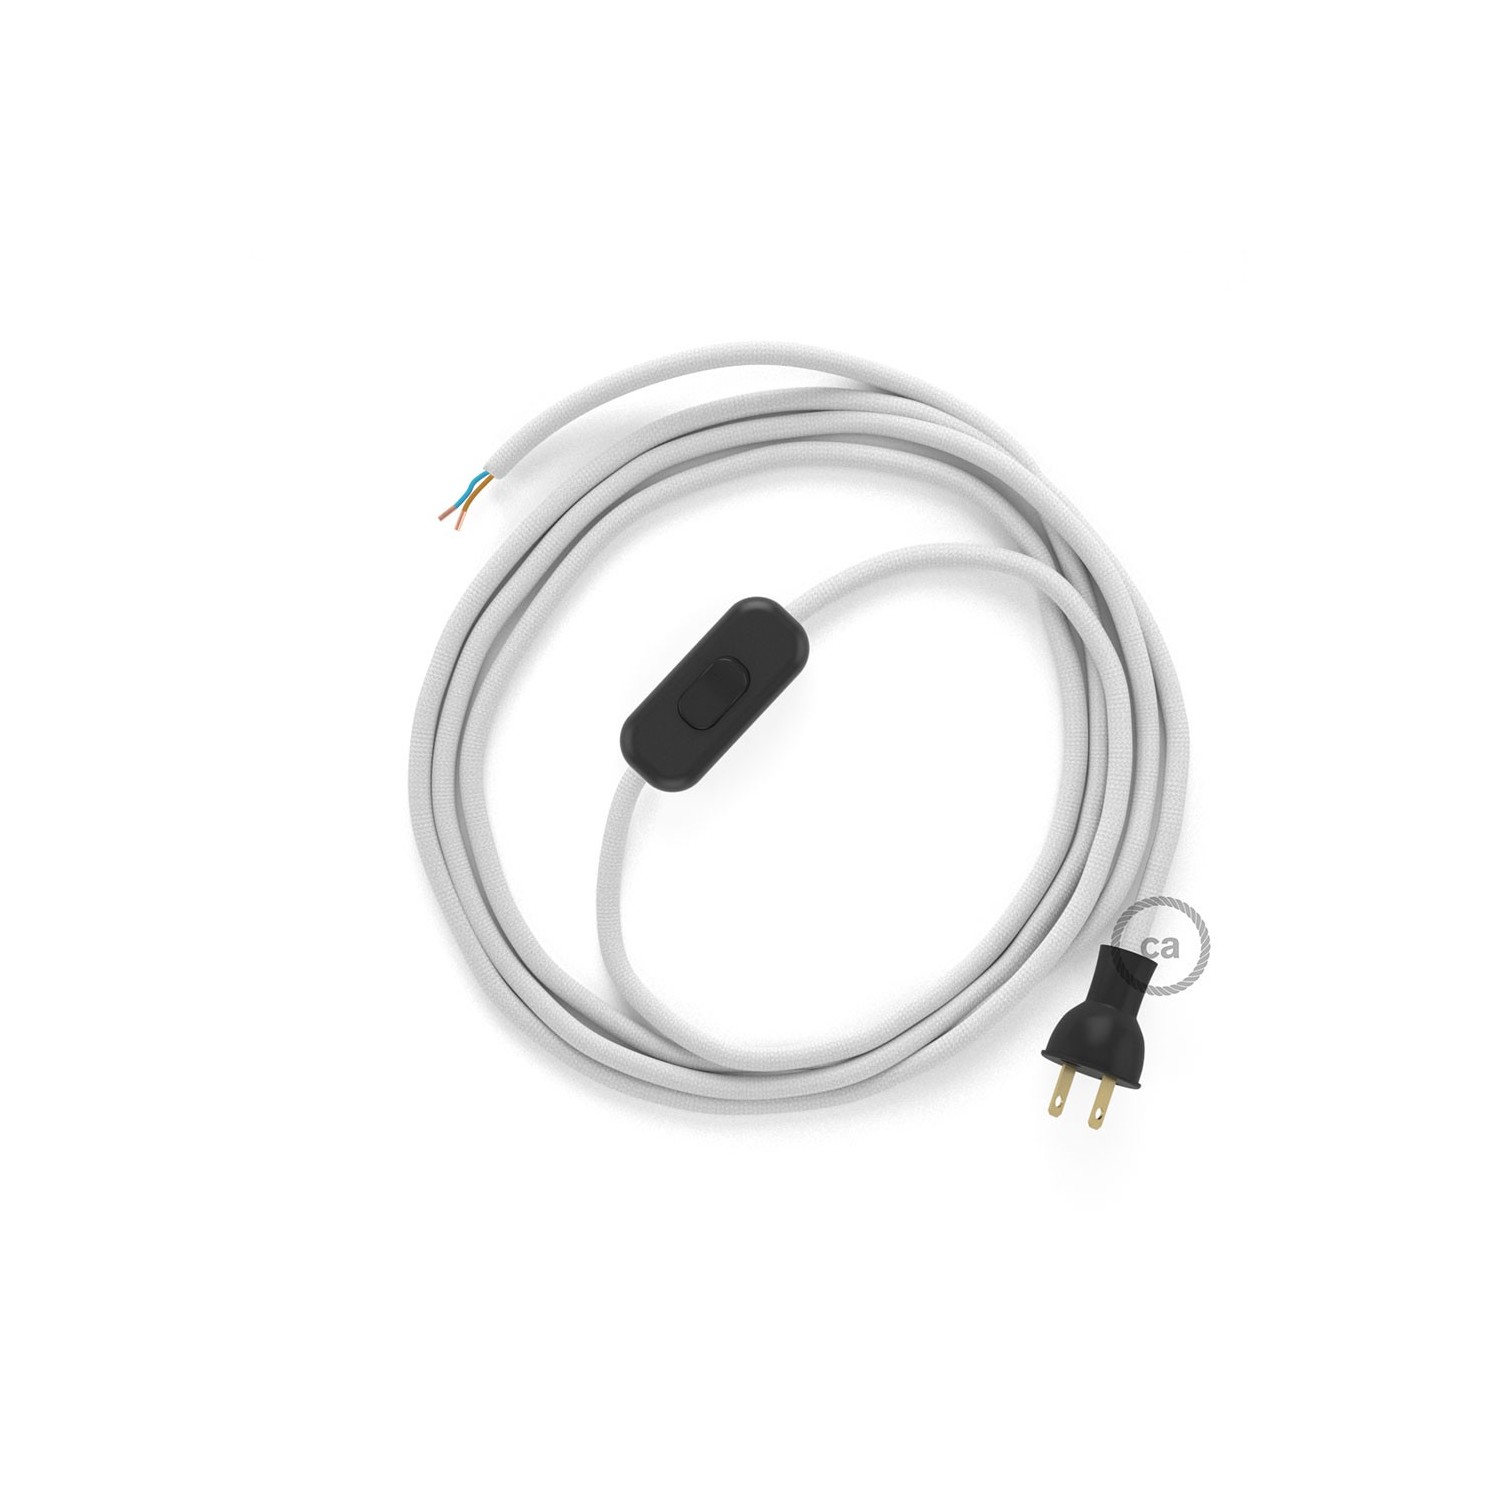 Cableado para lámpara de mesa, cable RM01 Rayón Blanco 1,8 m. Elige el color de la clavija y del interruptor!